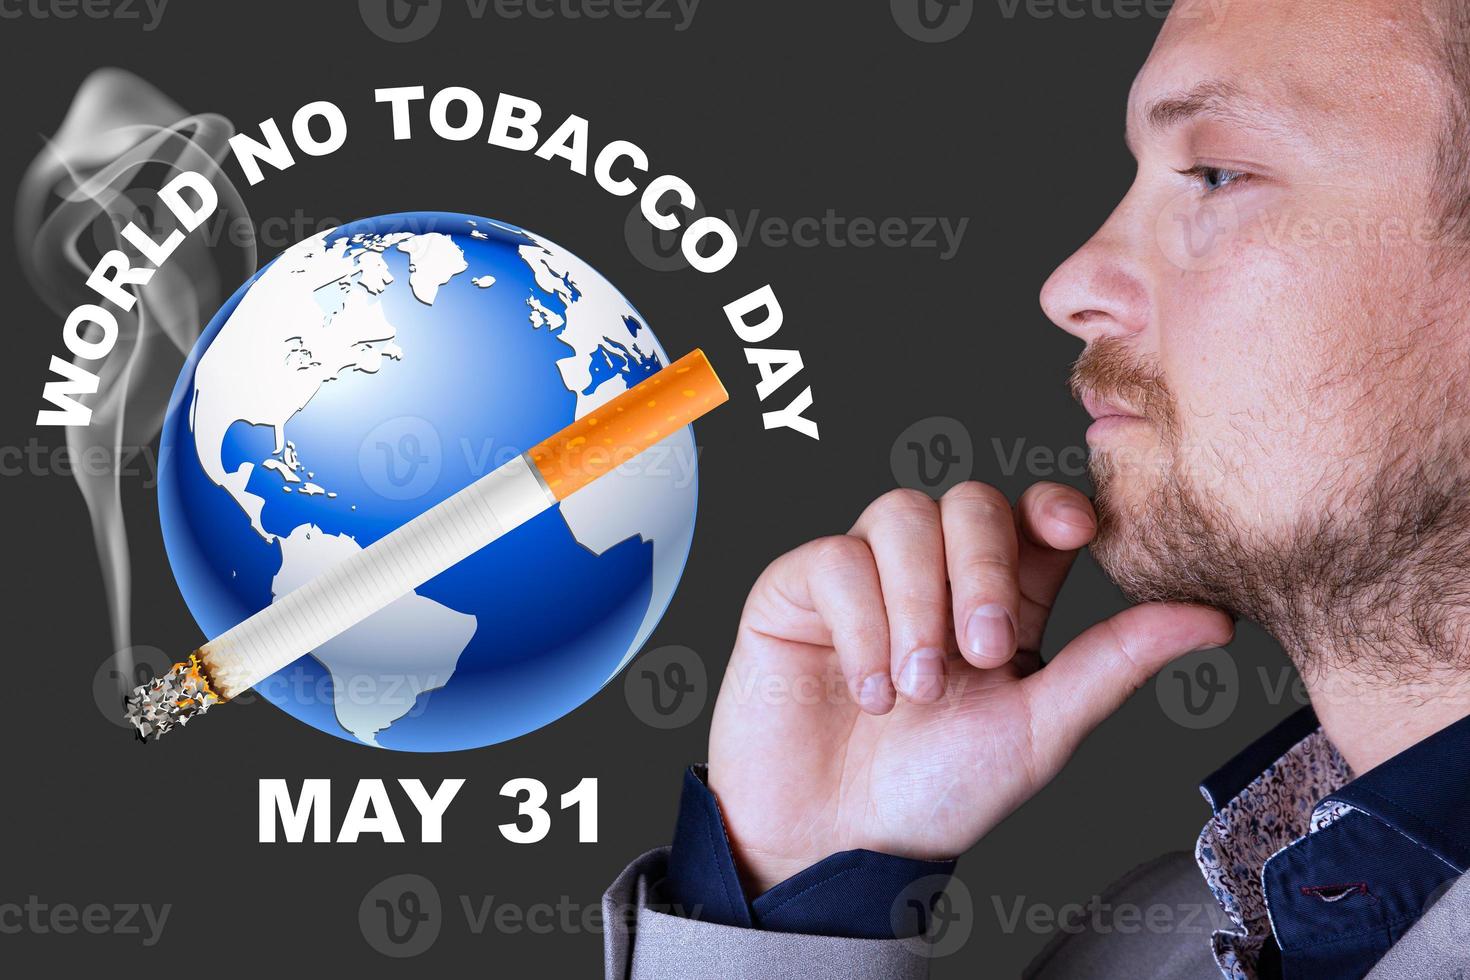 världsdagen för tobaksfri, affisch. en man tittar på jordklotet mot bakgrund av en rökande cigarett. foto